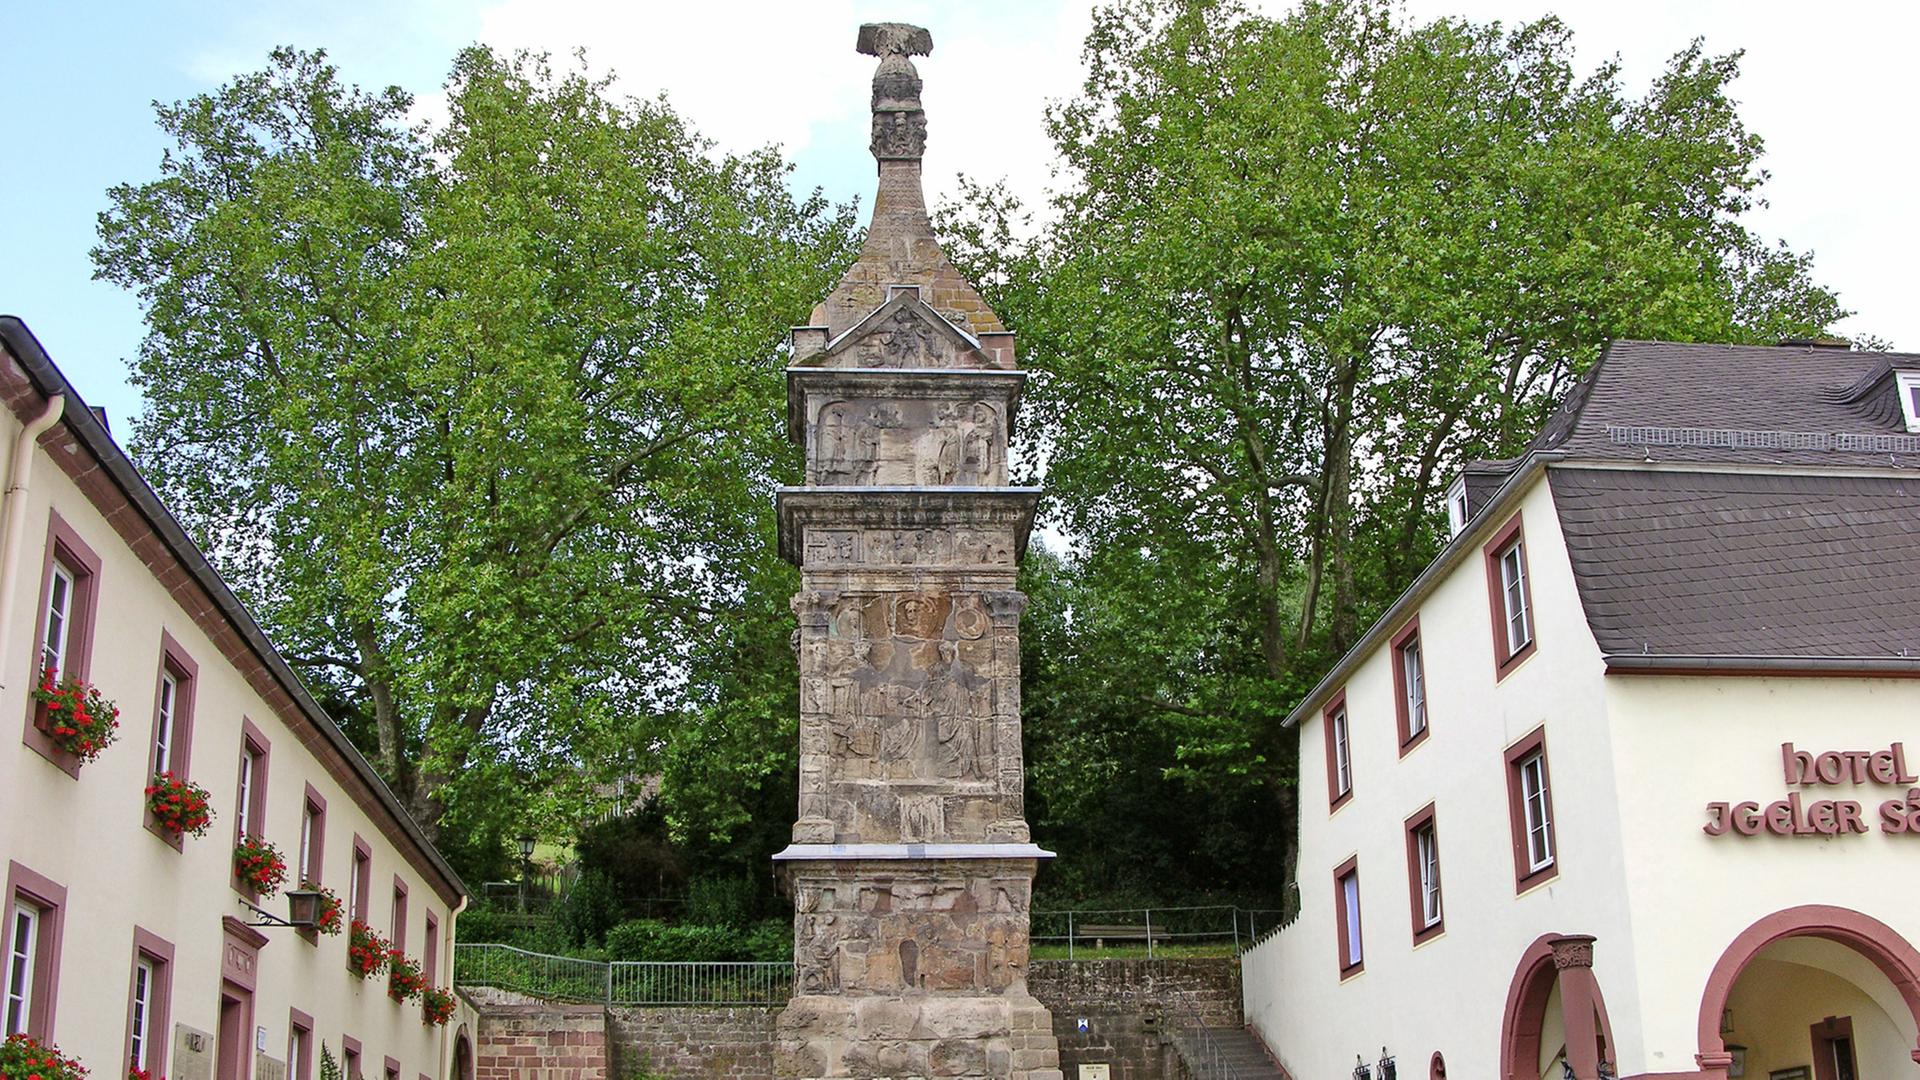 Die Igeler Säule befindet sich in dem rheinland-pfälzischen Dorf Igel unweit von Trier.